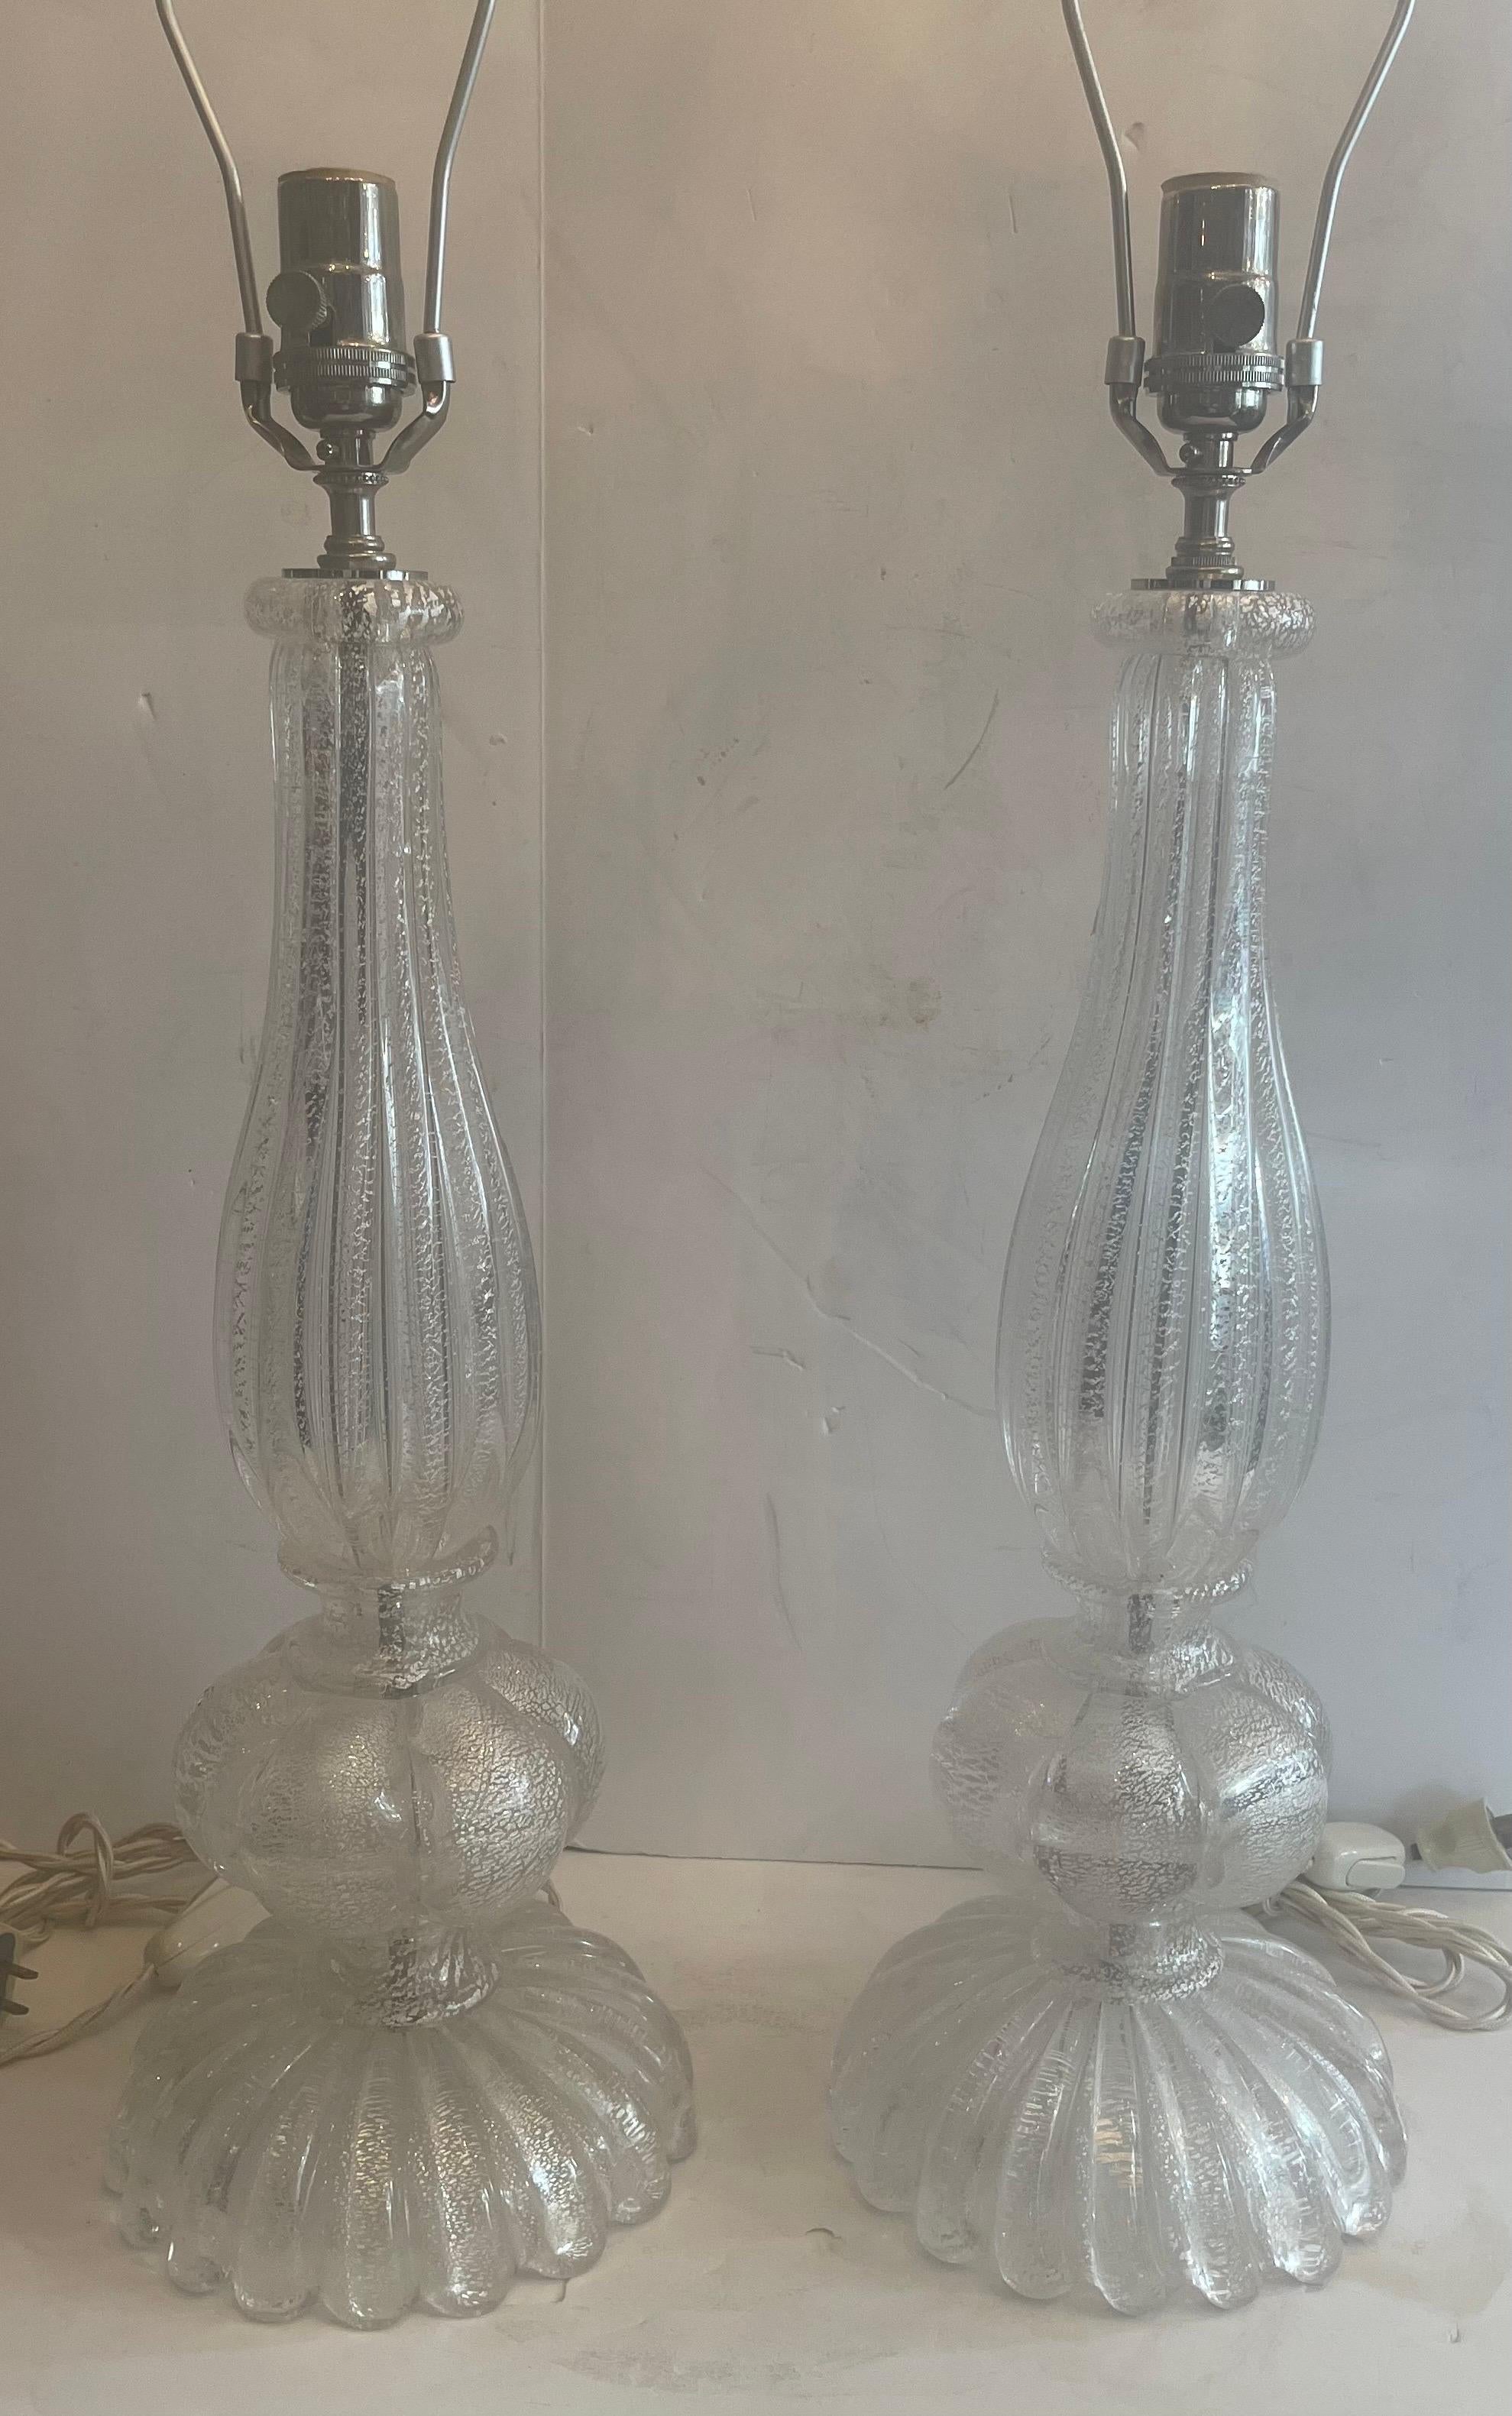 Magnifique paire de lampes en verre vénitien cannelé clair et argenté de style Art Déco, de style Murano Seguso, de la modernité du milieu du siècle dernier, avec de nouveaux raccords et fils en nickel poli.
Acheté à Lorin Marsh.
